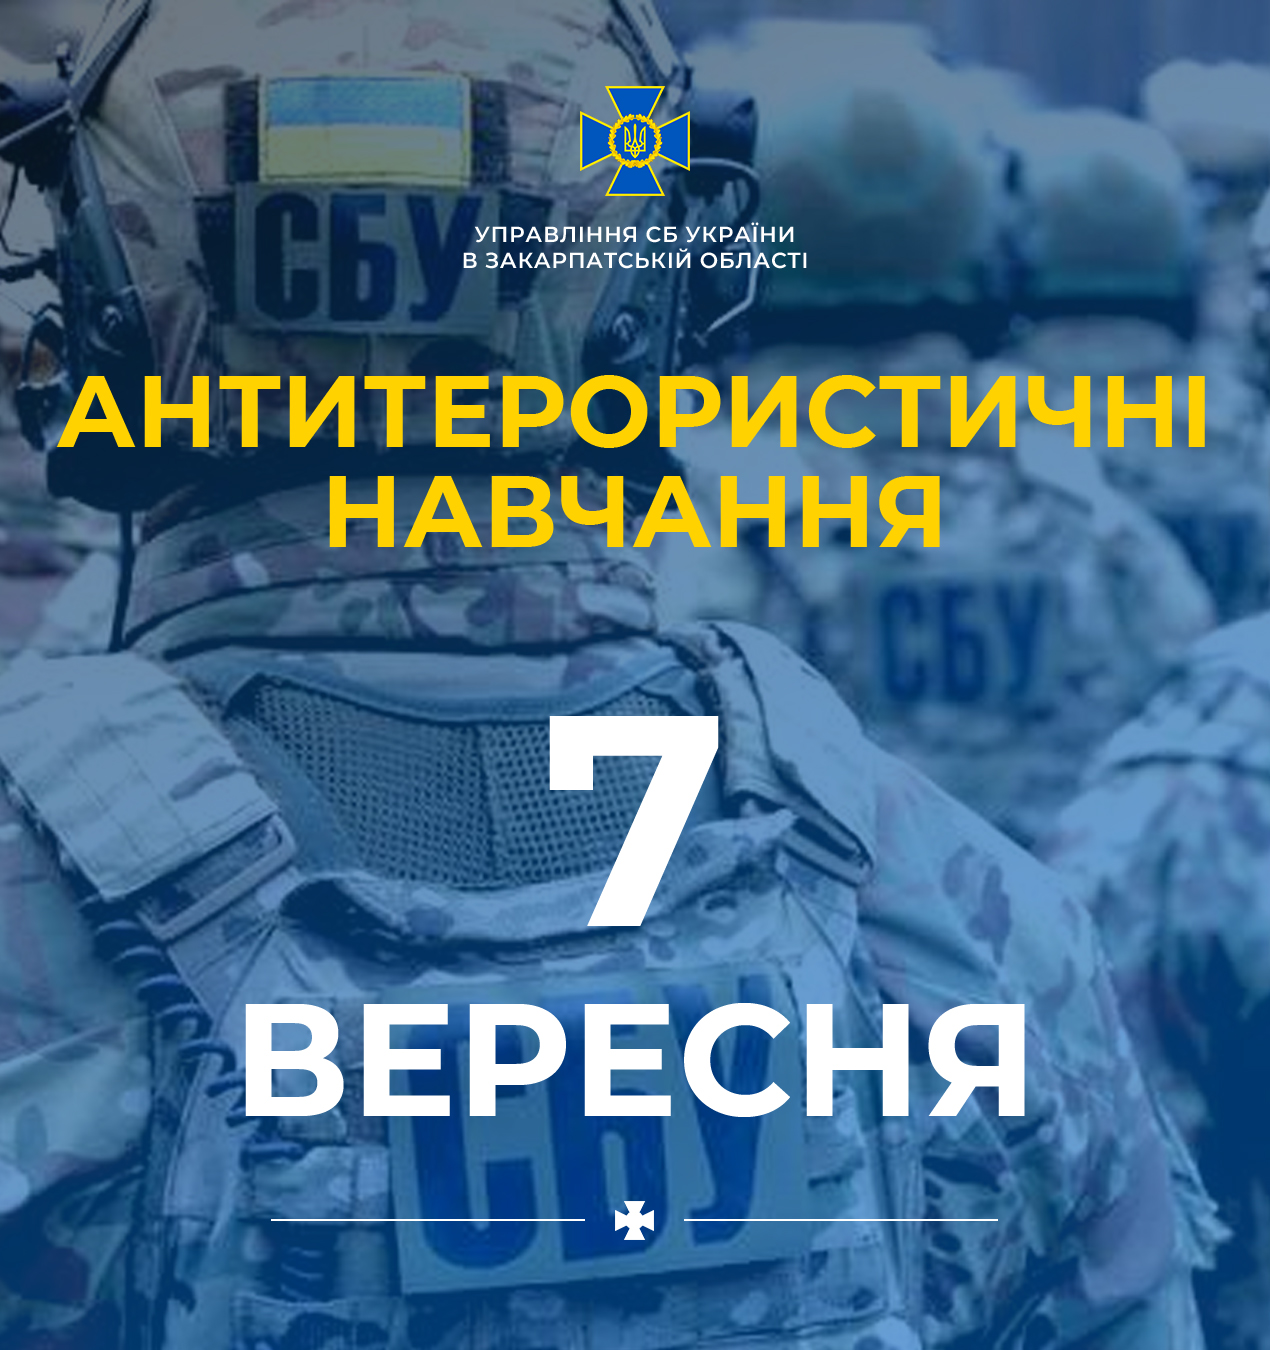 УСБУ проведе антитерористичні навчання в аеропорту "Ужгород"